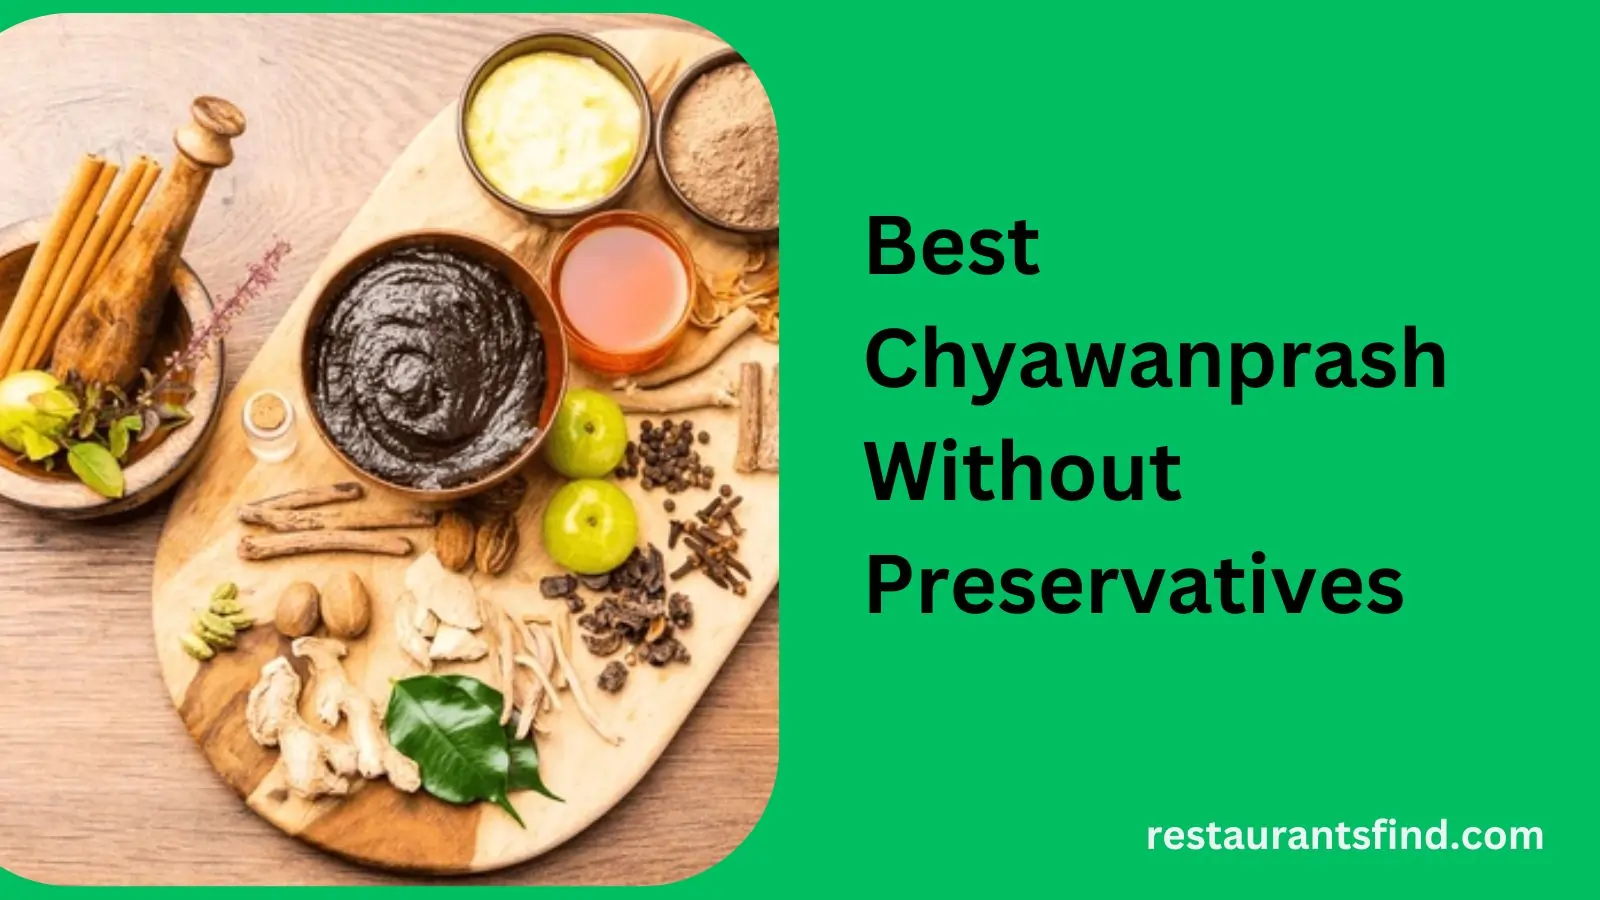 10 Best Chyawanprash Without Preservatives